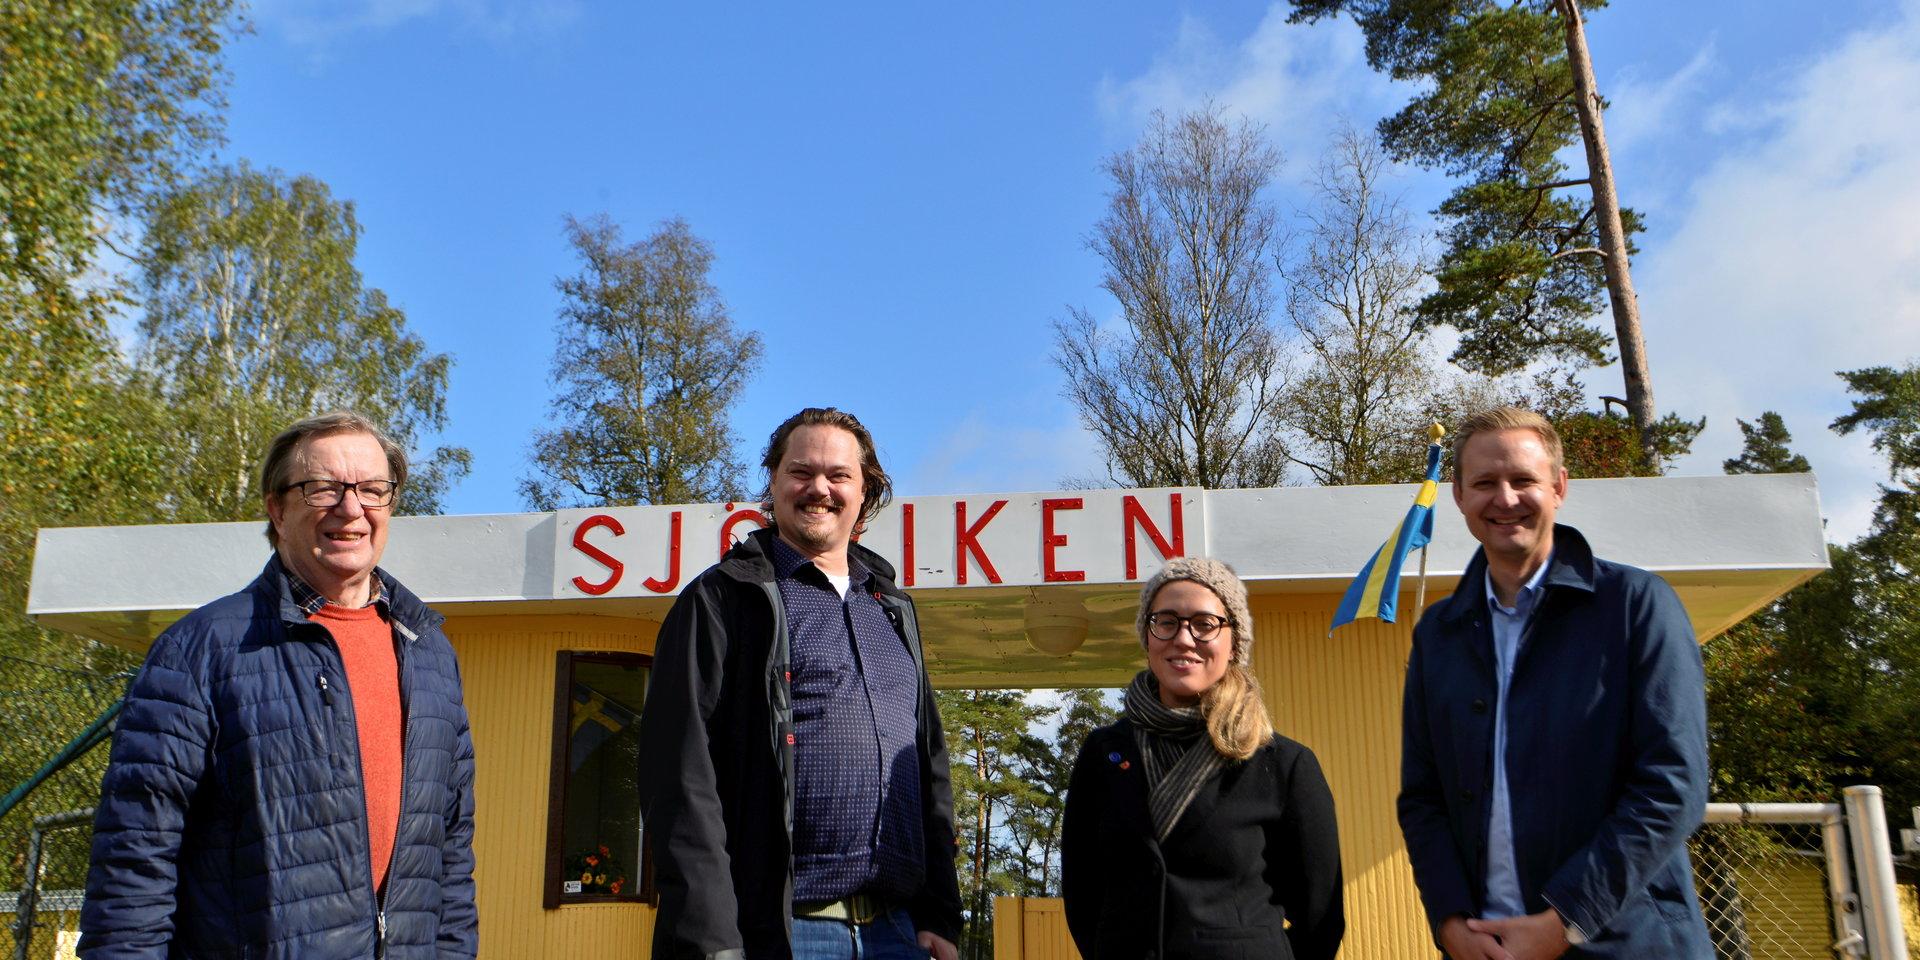 Framtid Falkenberg på besök i Ätran i september 2021, nästan exakt ett år före valet.